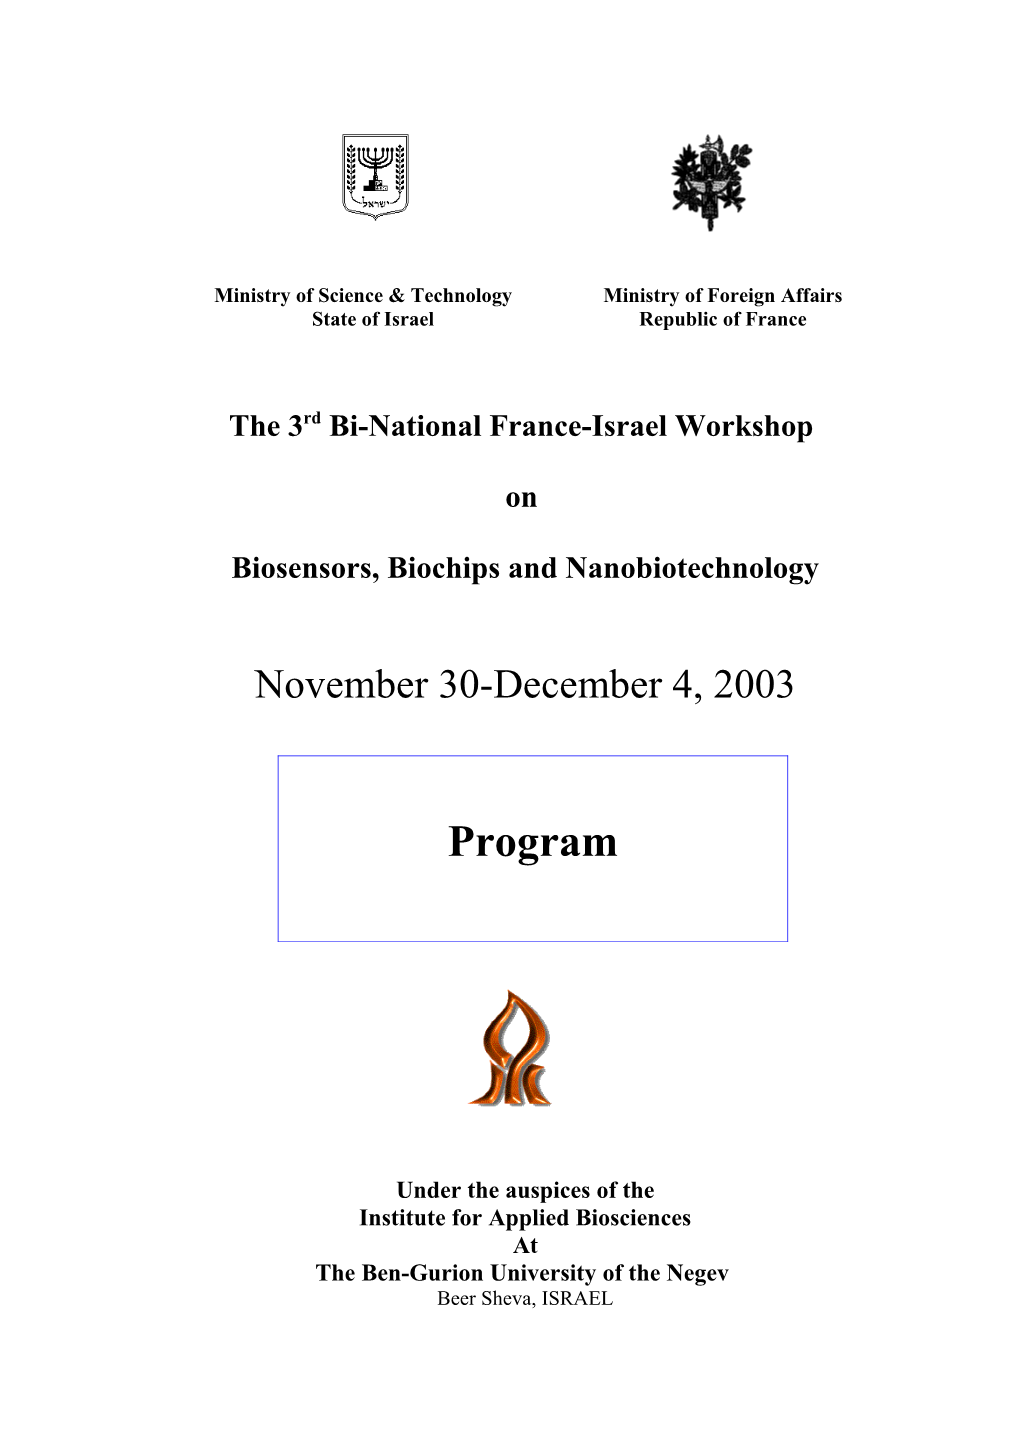 The 3Rd Bi-National France-Israel Workshop